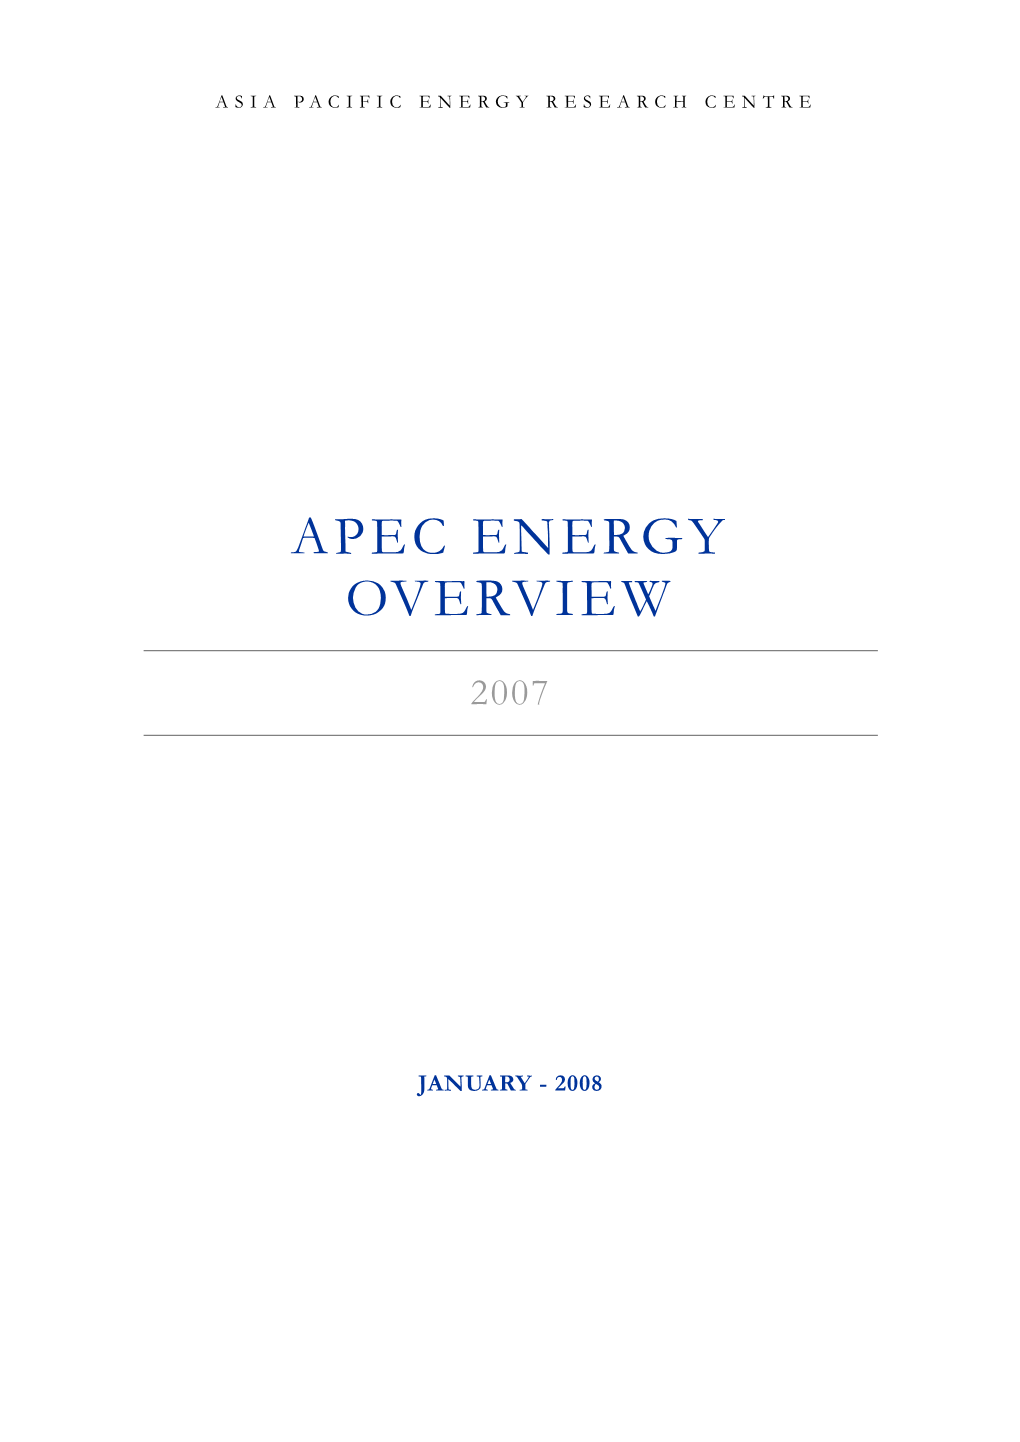 APEC Energy Overview 2007